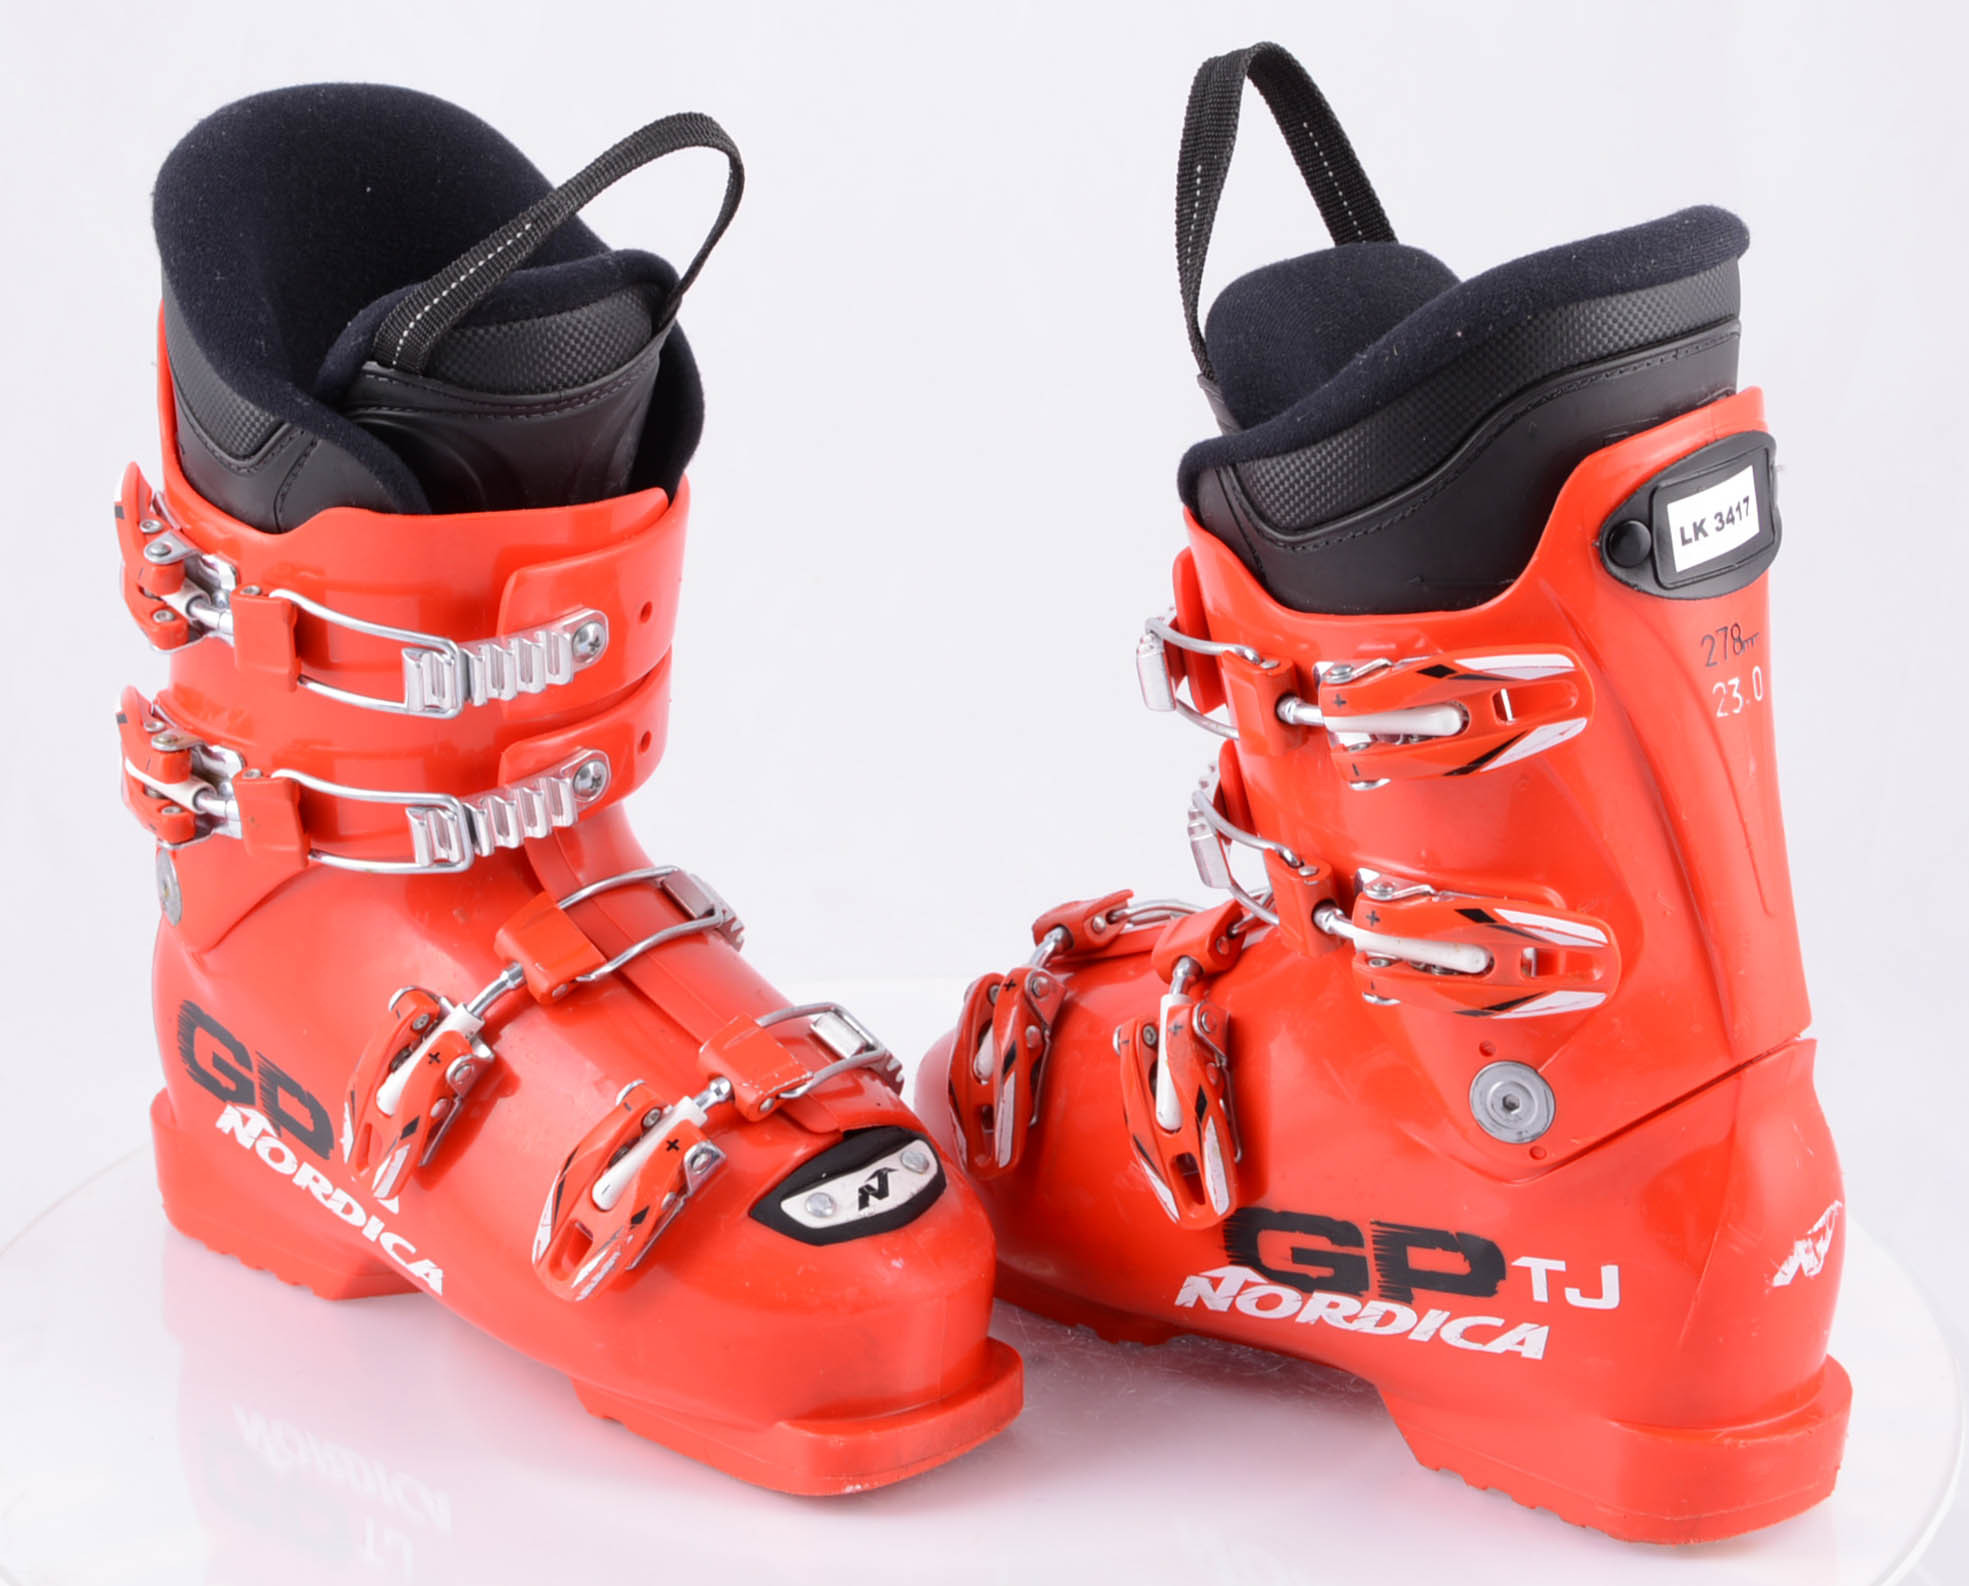 children's/junior ski boots NORDICA GP TJ red, micro, macro ( TOP